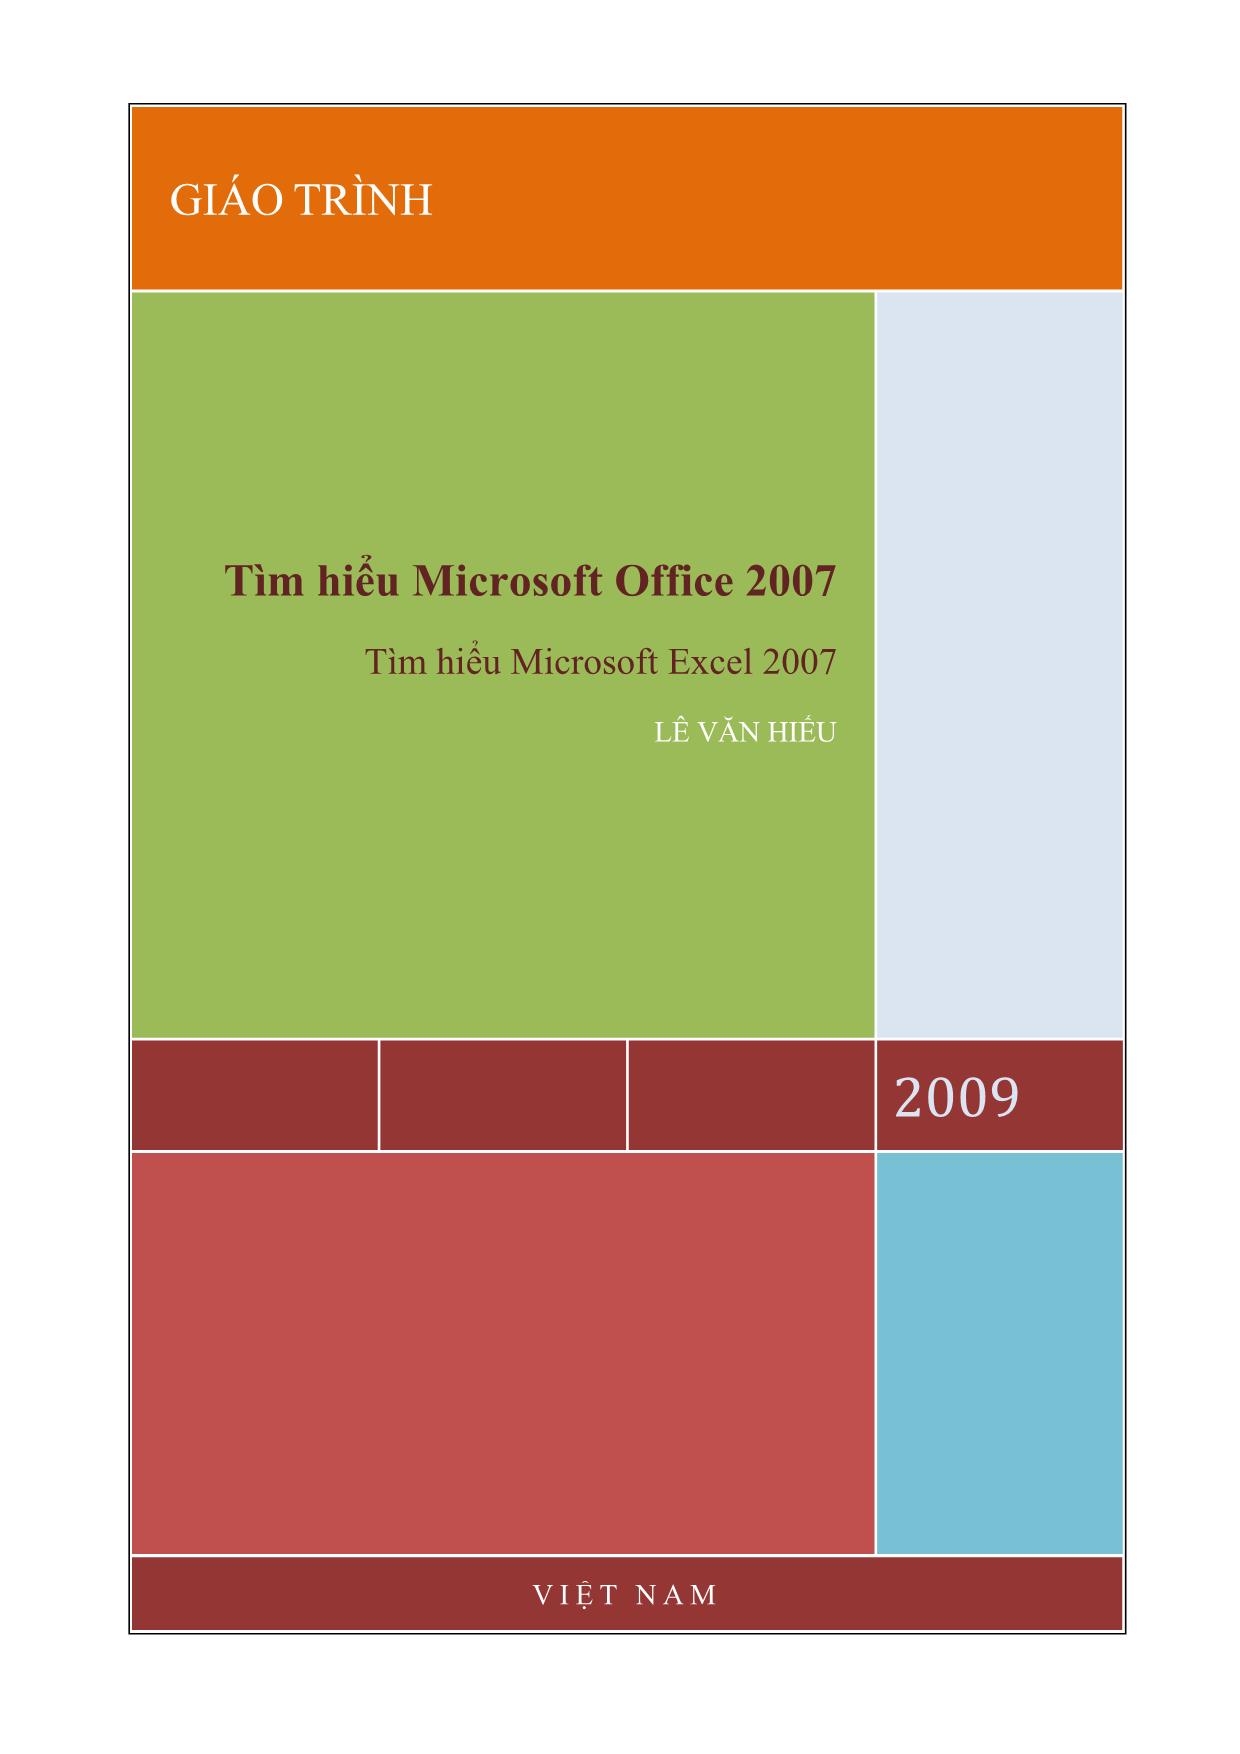 Giáo trình Tìm hiểu Microsoft Office 2007 trang 1